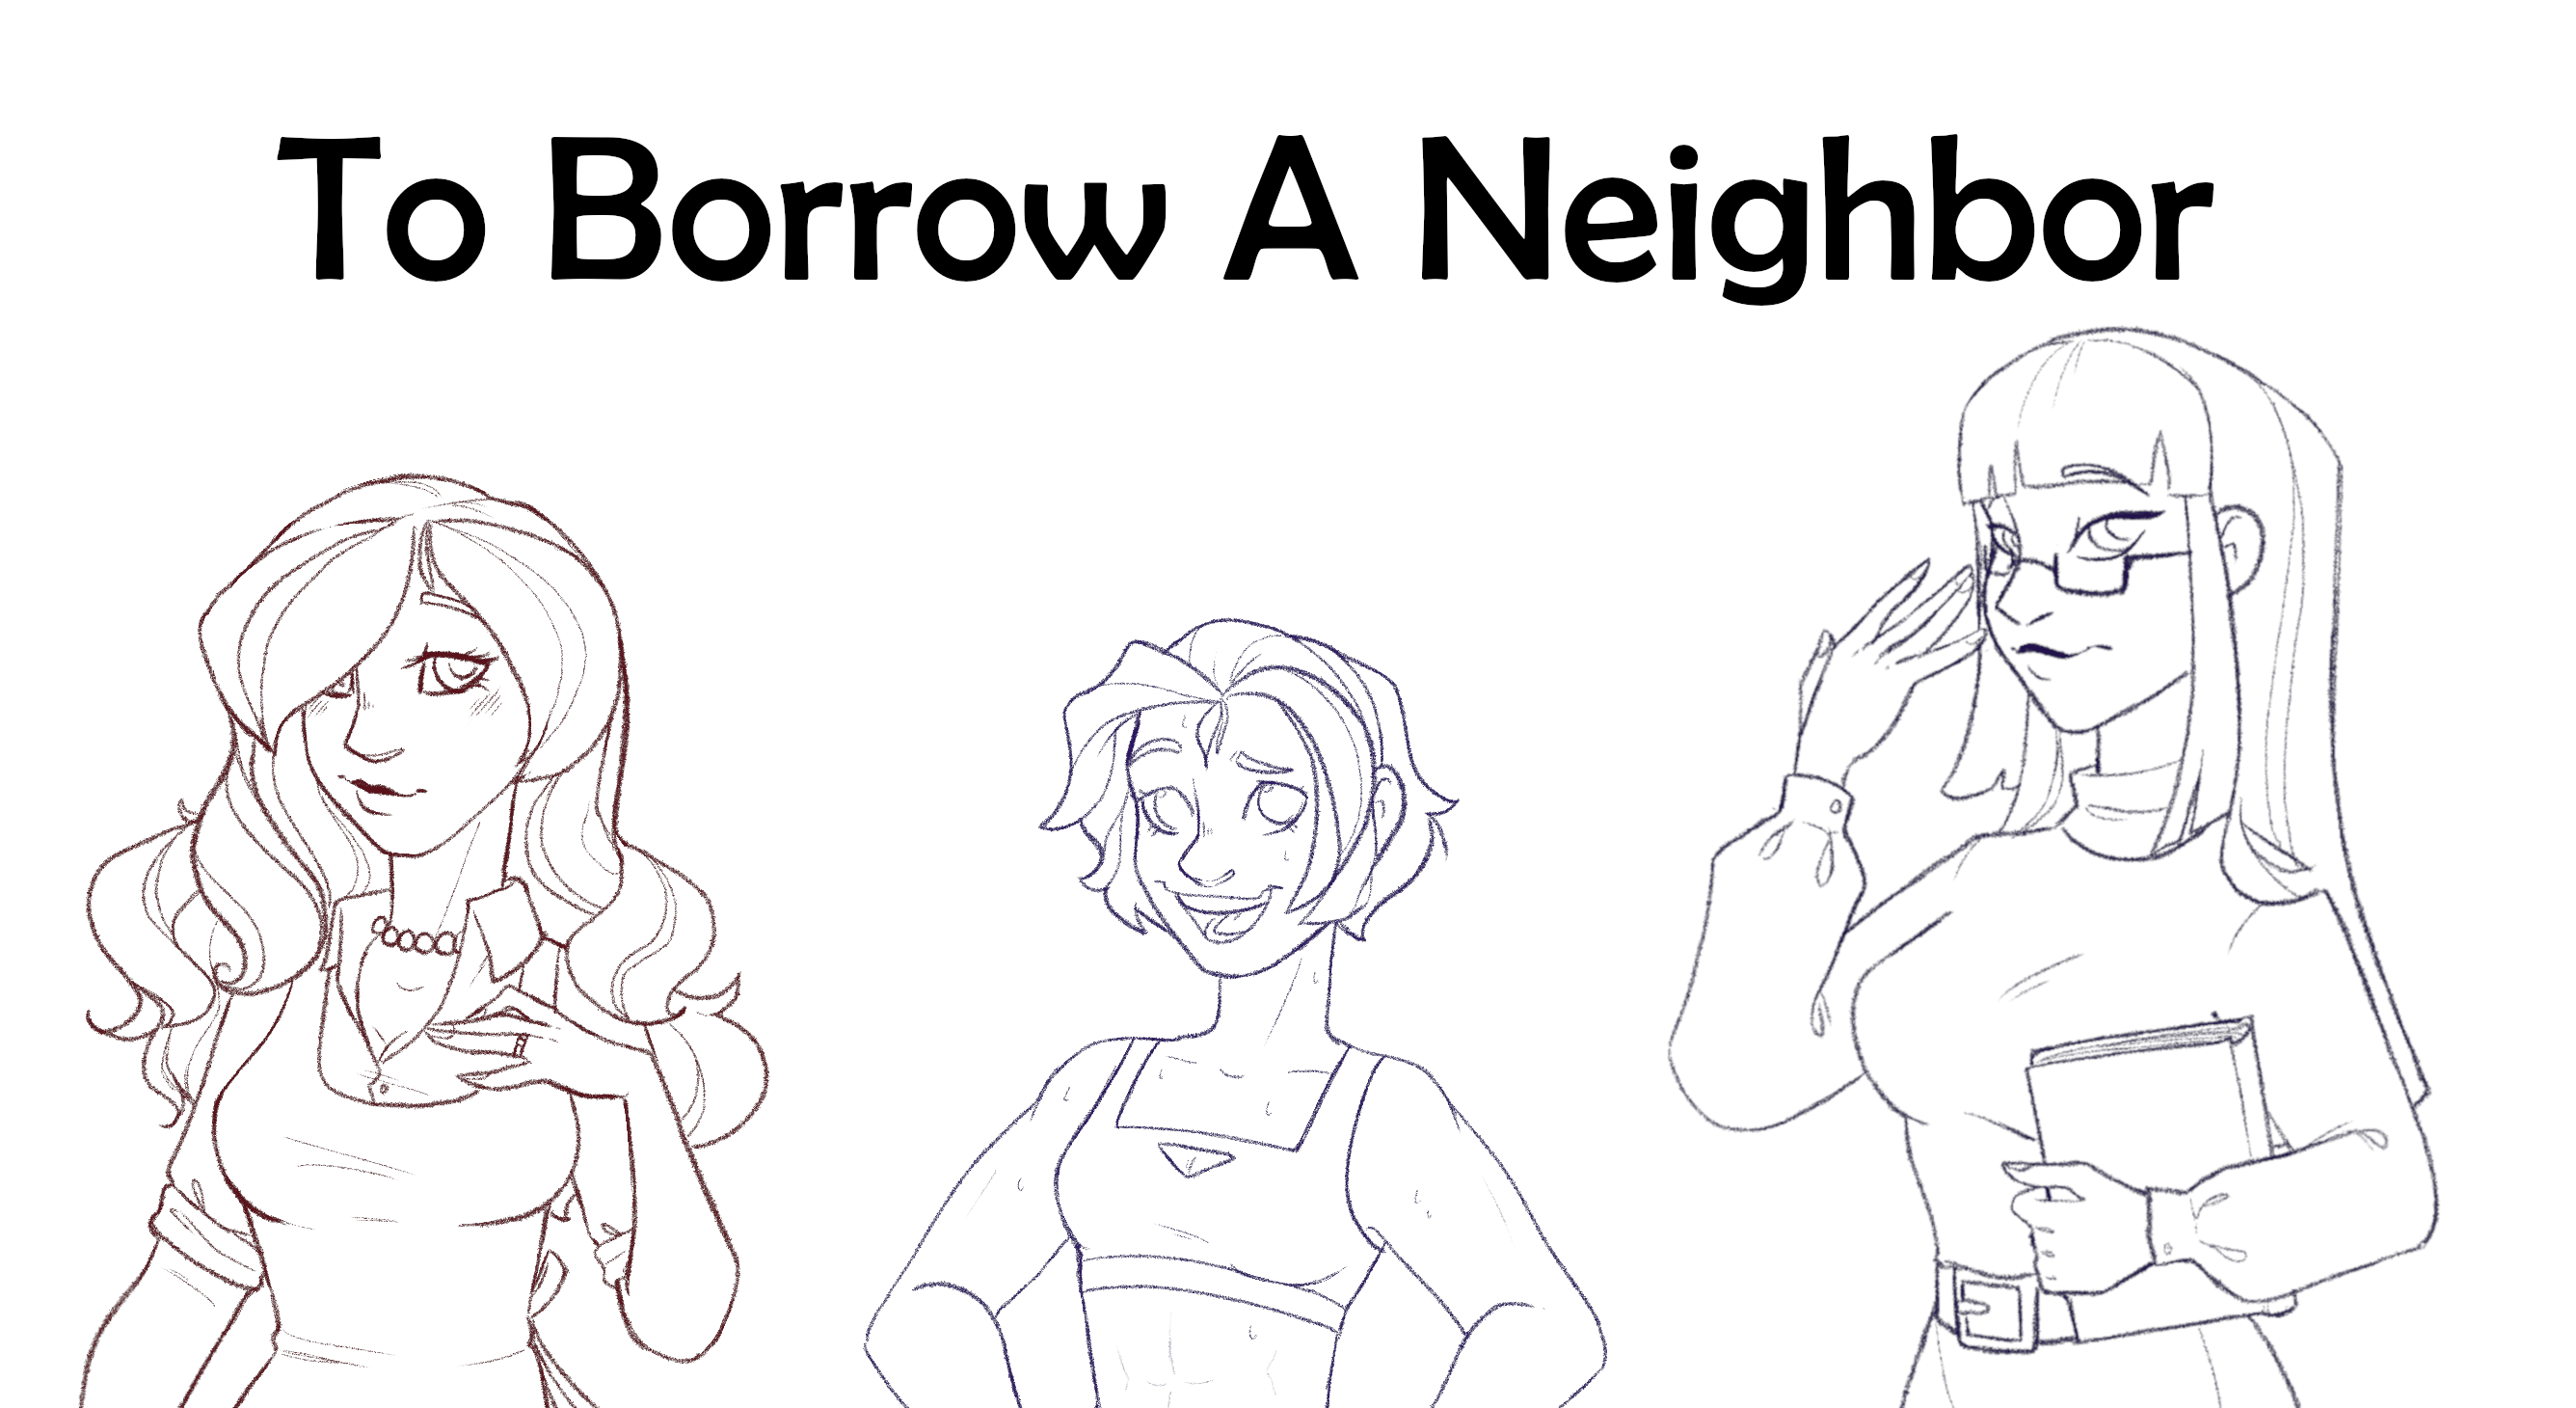 To Borrow A Neighbor